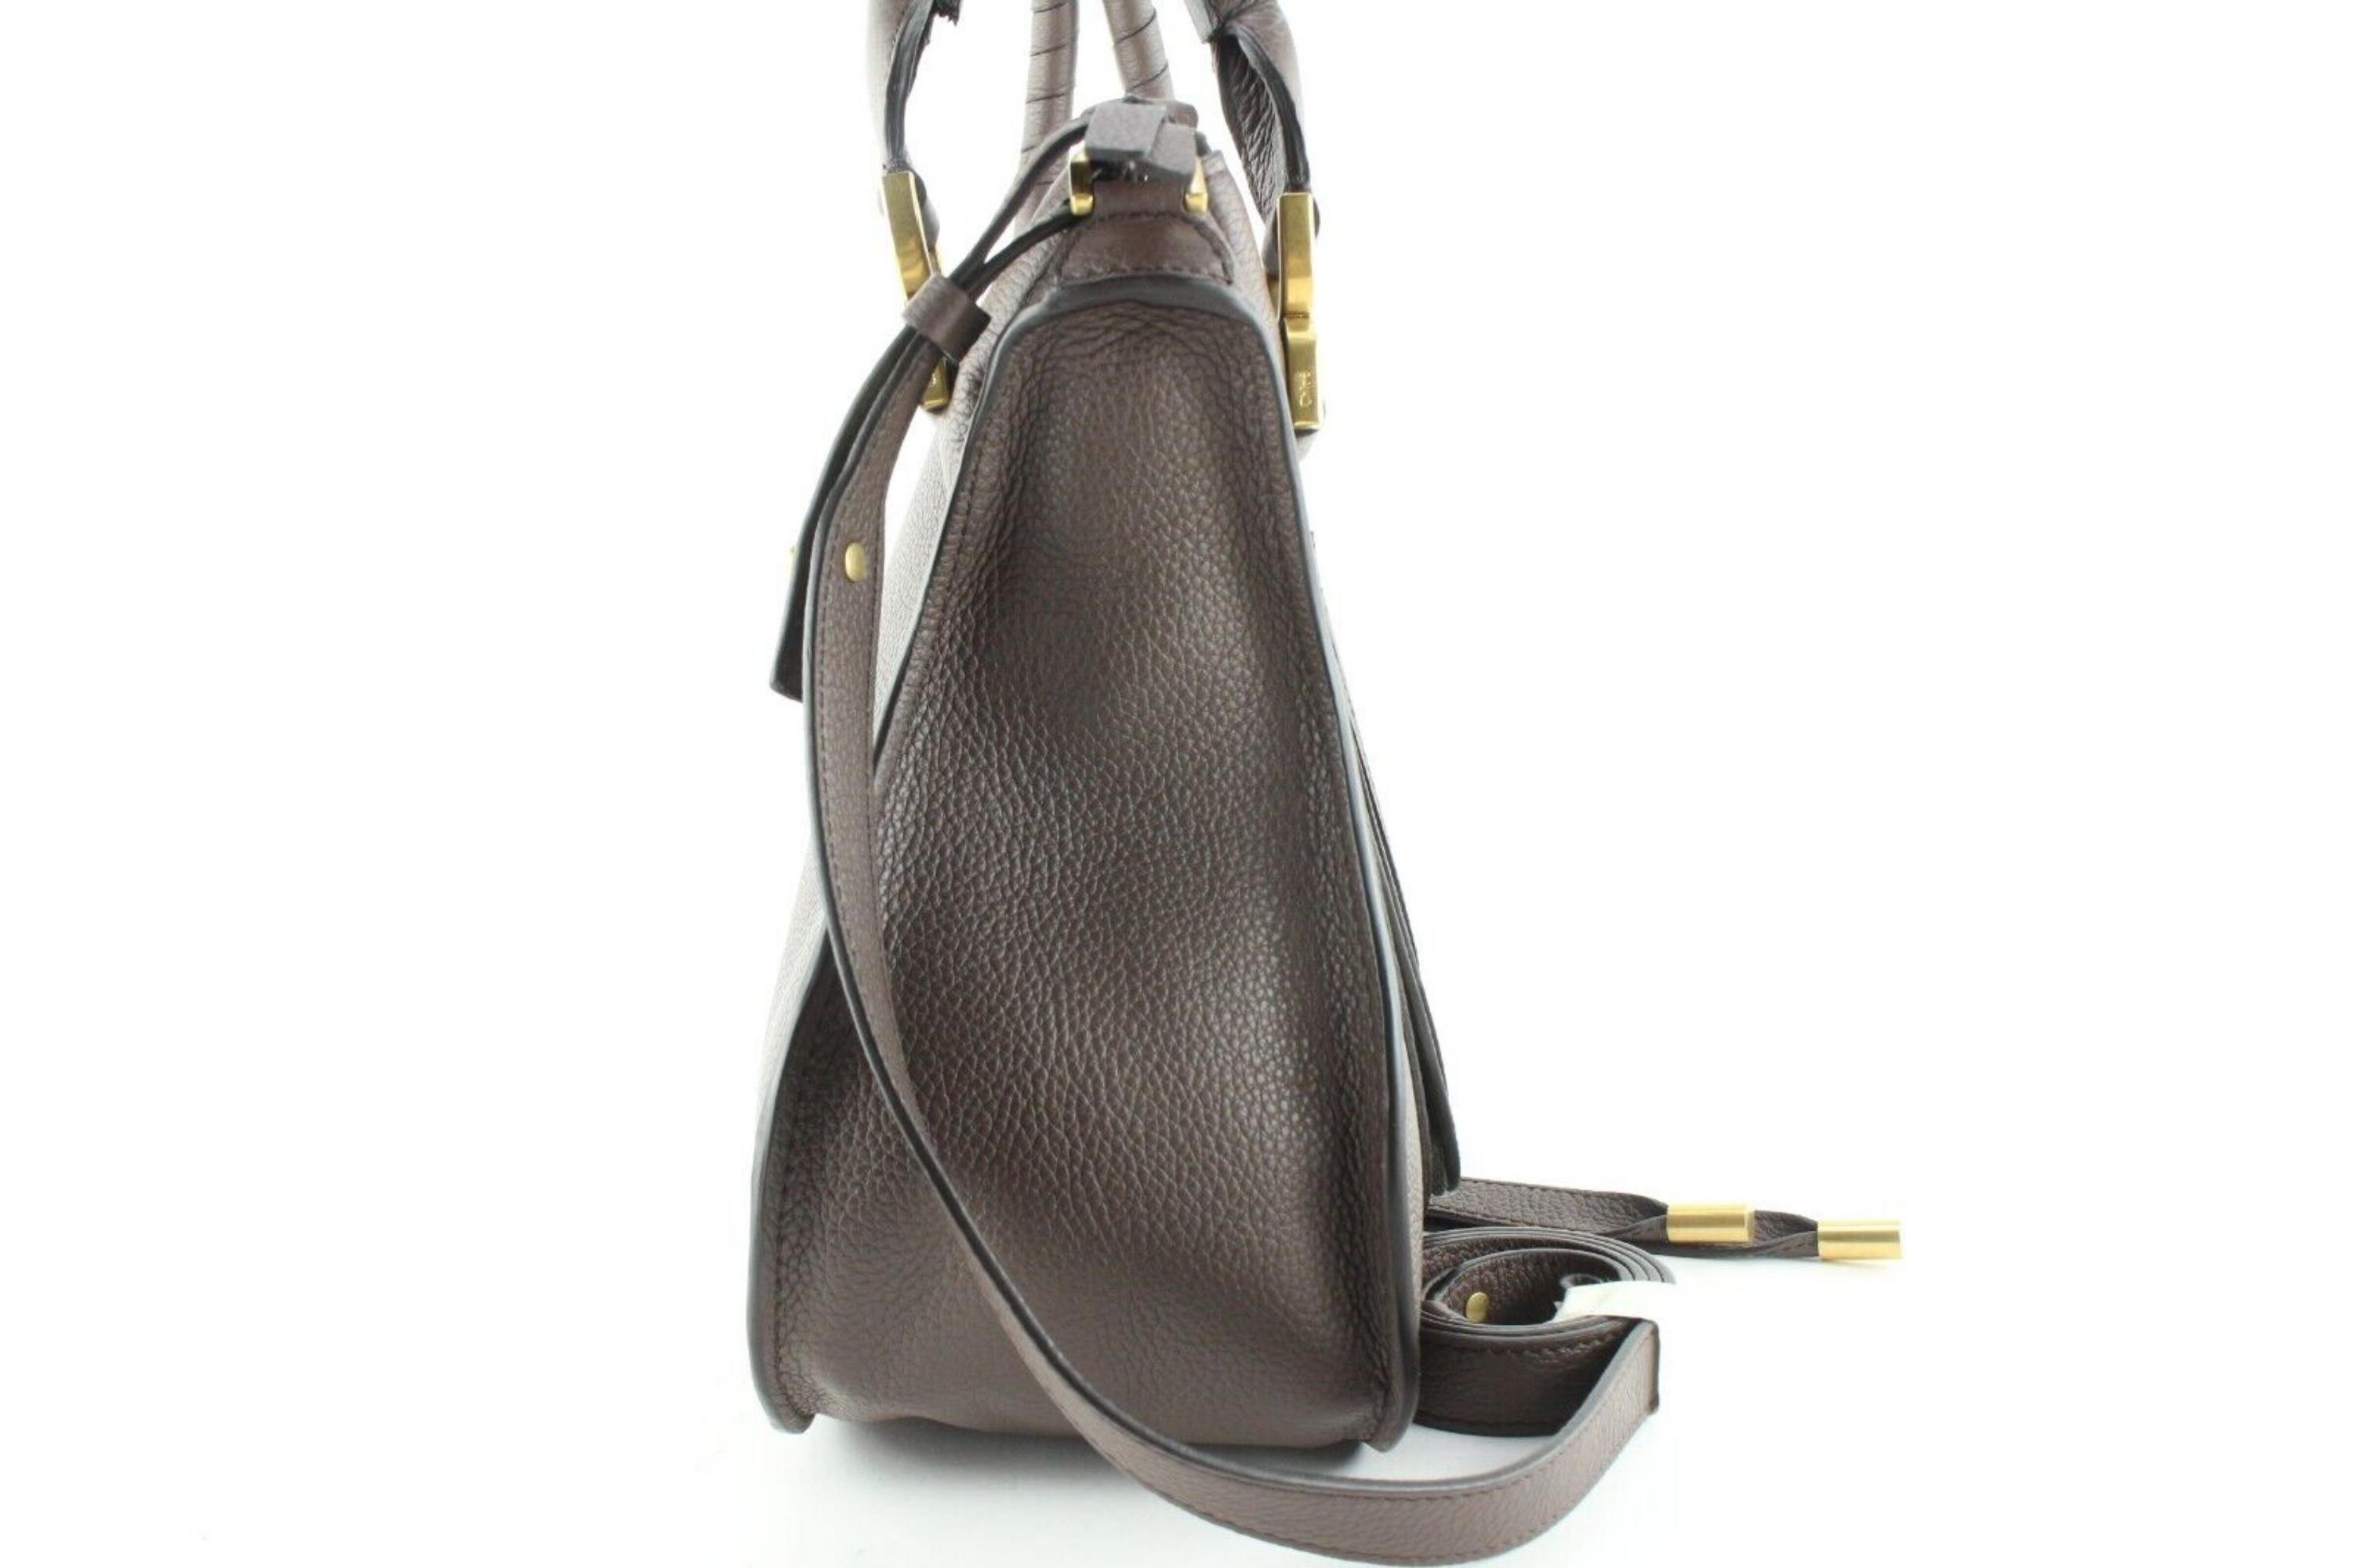 Chloe Grey Leather Medium Marcie 2way Flap Bag 1CH0509 For Sale 7